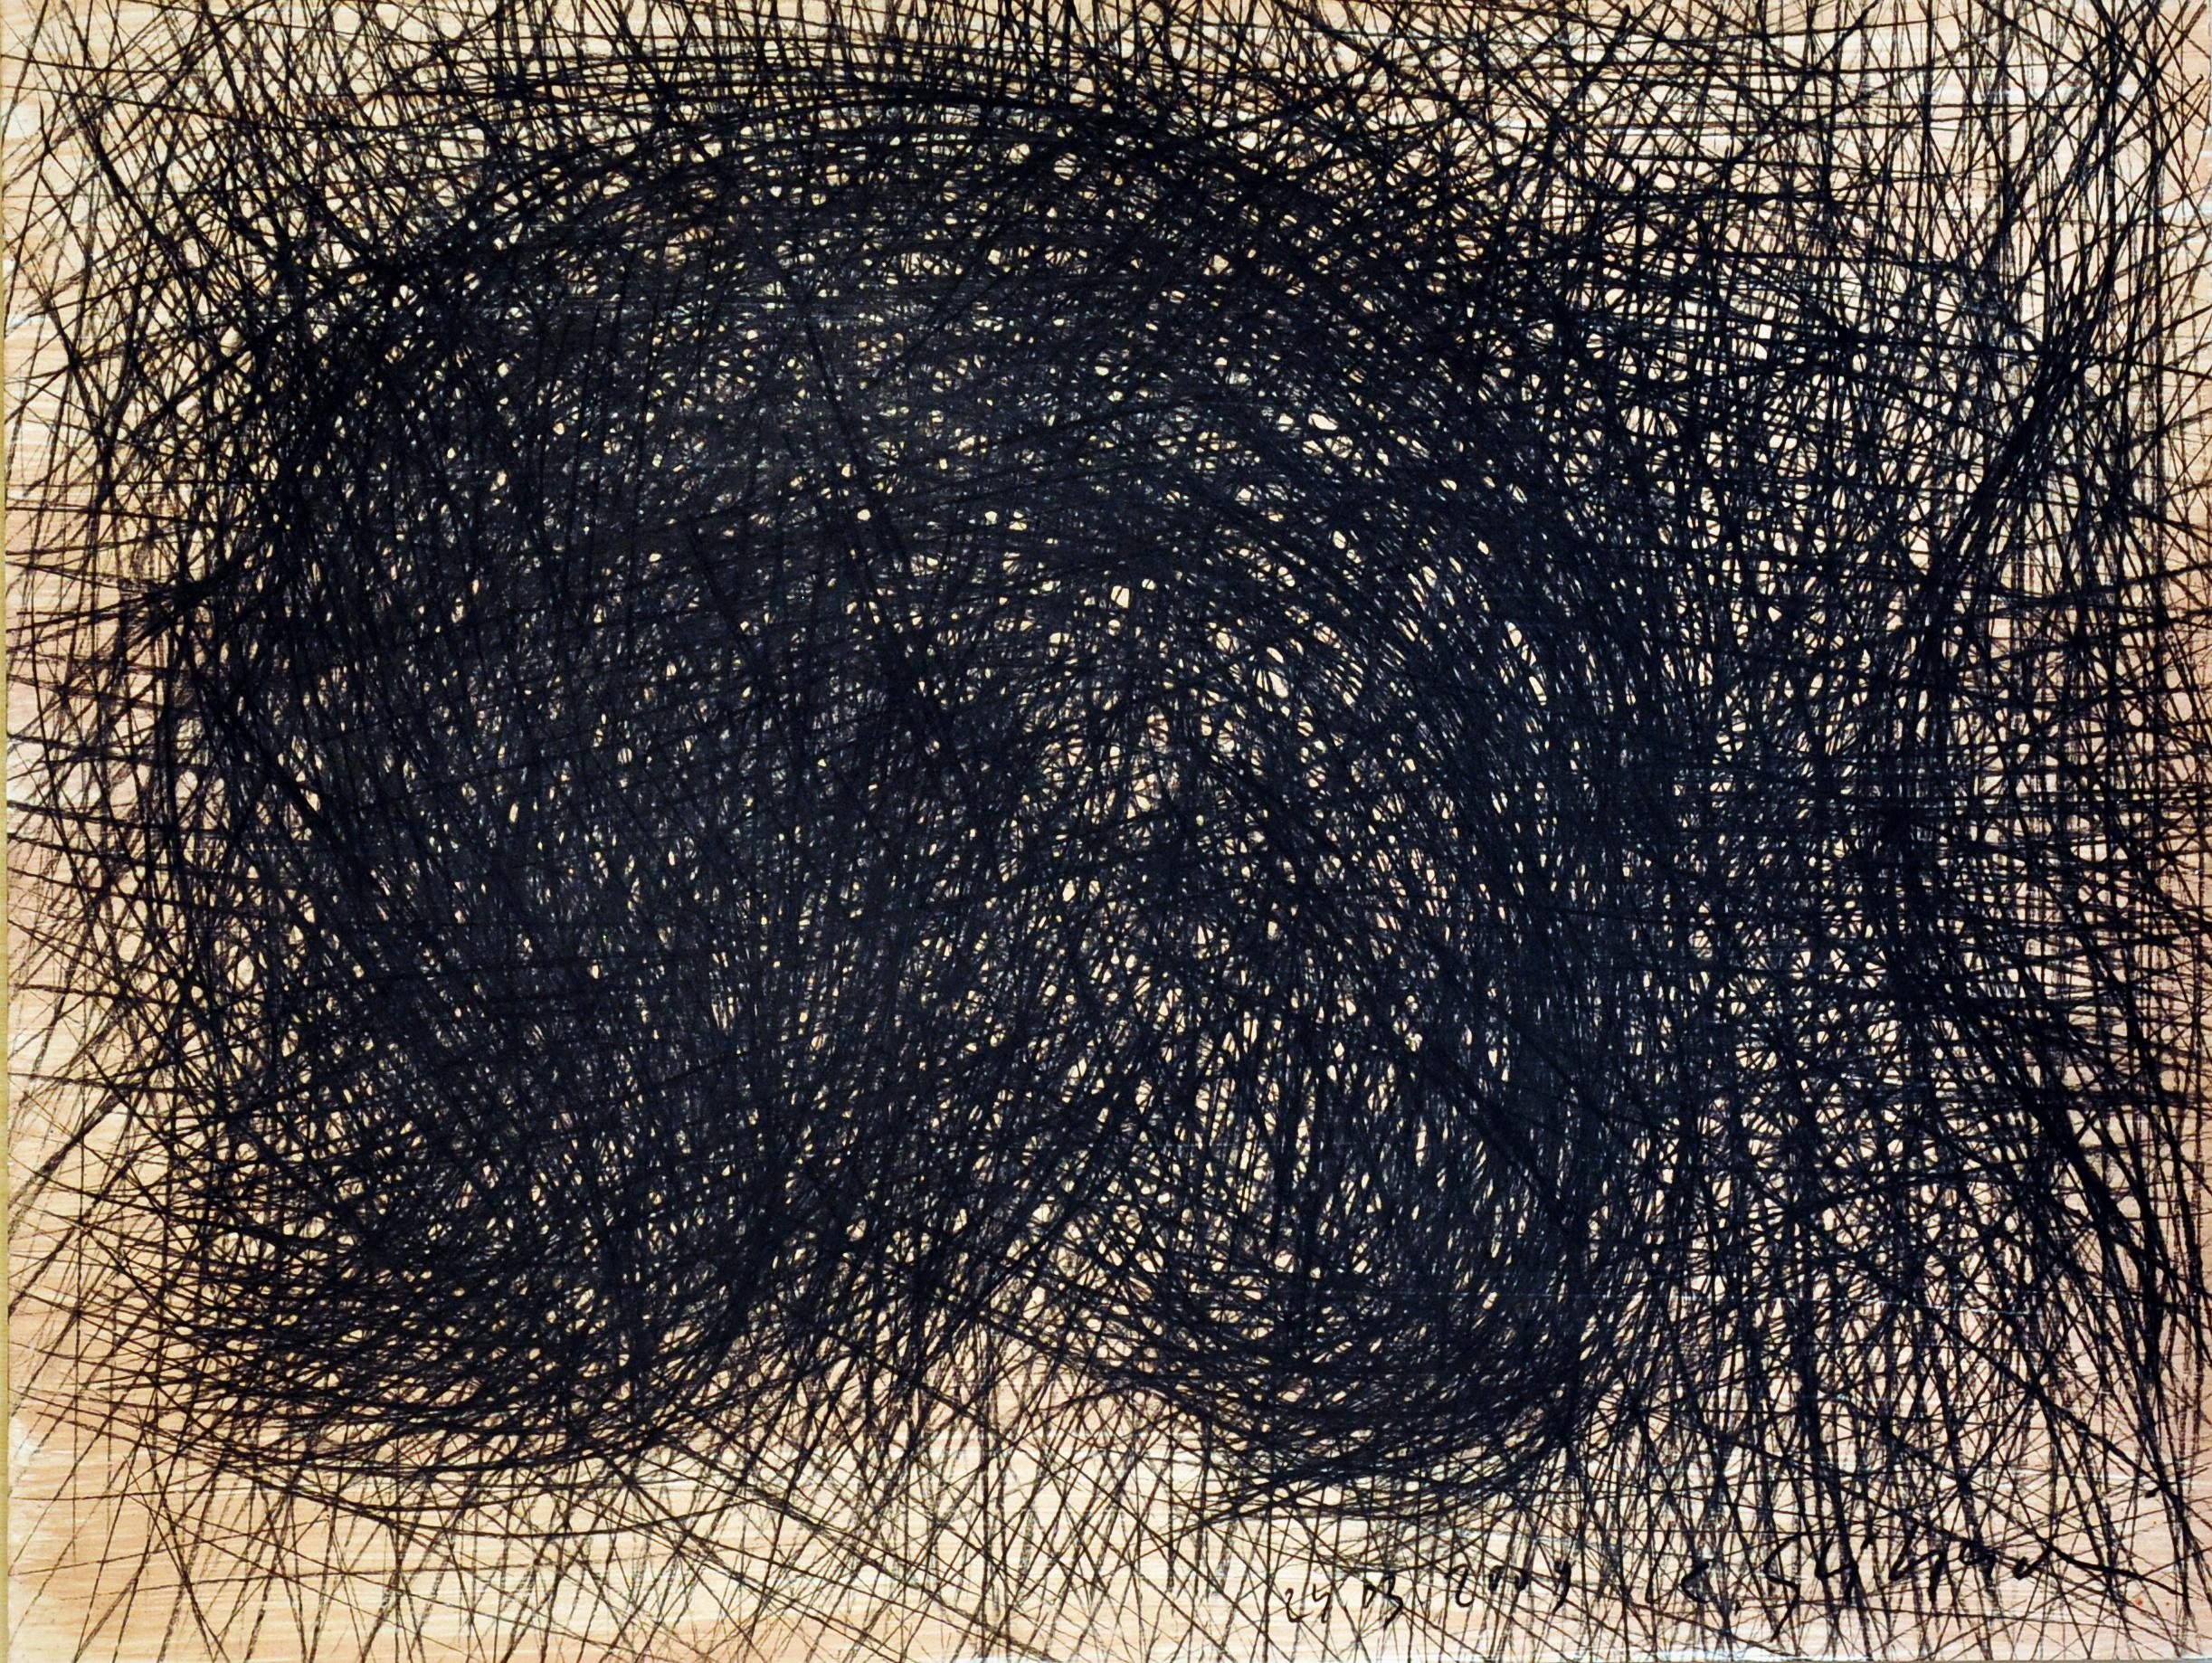 Abstract Painting Krzysztof Gliszczyński - Sans titre 1 -  Peinture expressionniste au fusain sur papier, dessin en noir et blanc